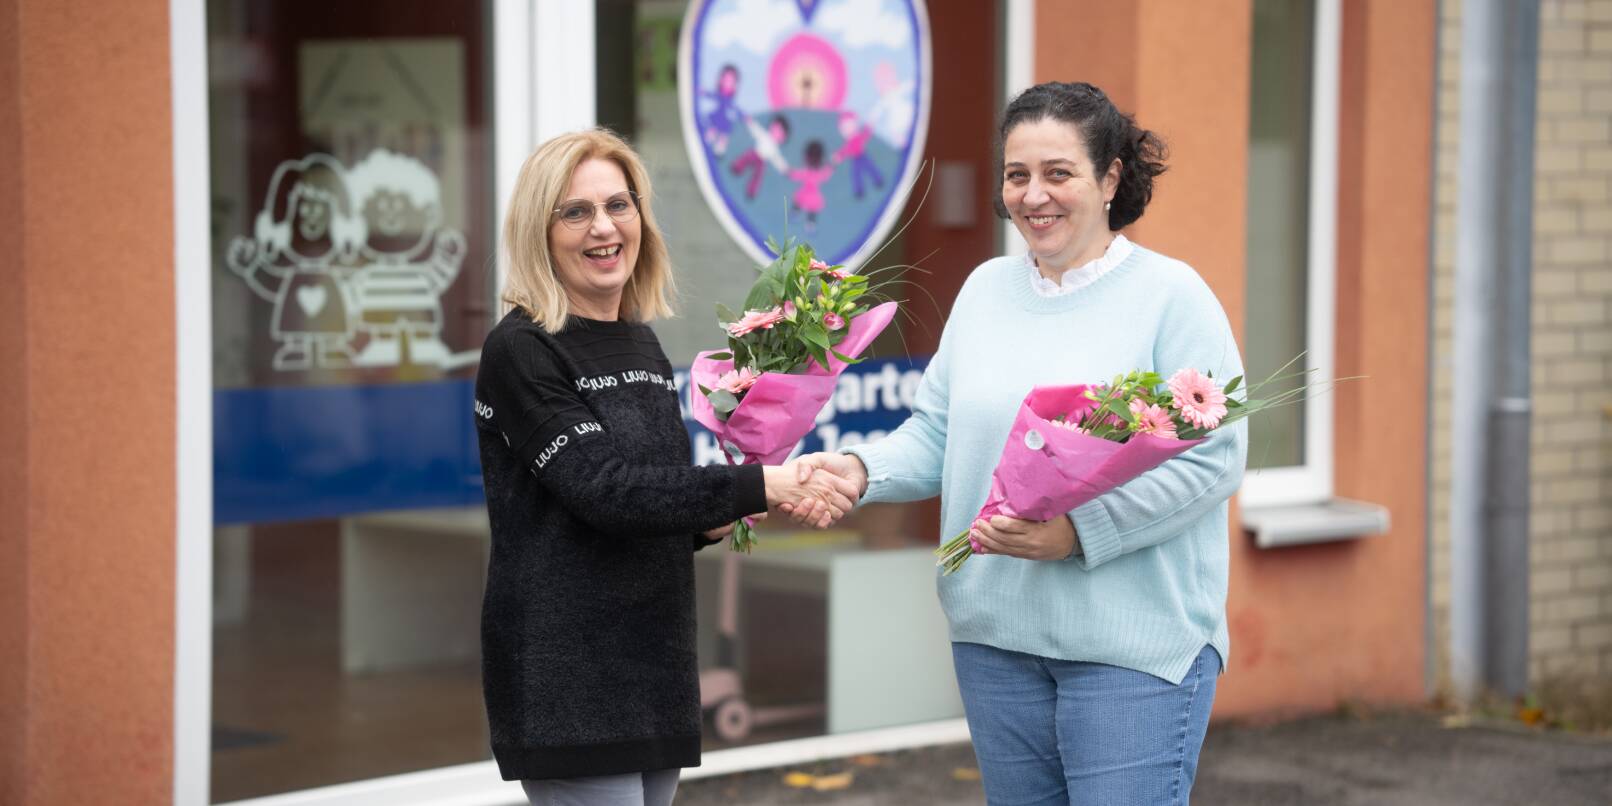 Leitungswechsel: Nach 20 Jahren verdienstvoller Arbeit übergibt Jolanta Porwolik (rechts) die Leitung des katholischen Kindergartens Herz Jesu in der Nordstadt an Daniela Flögel.